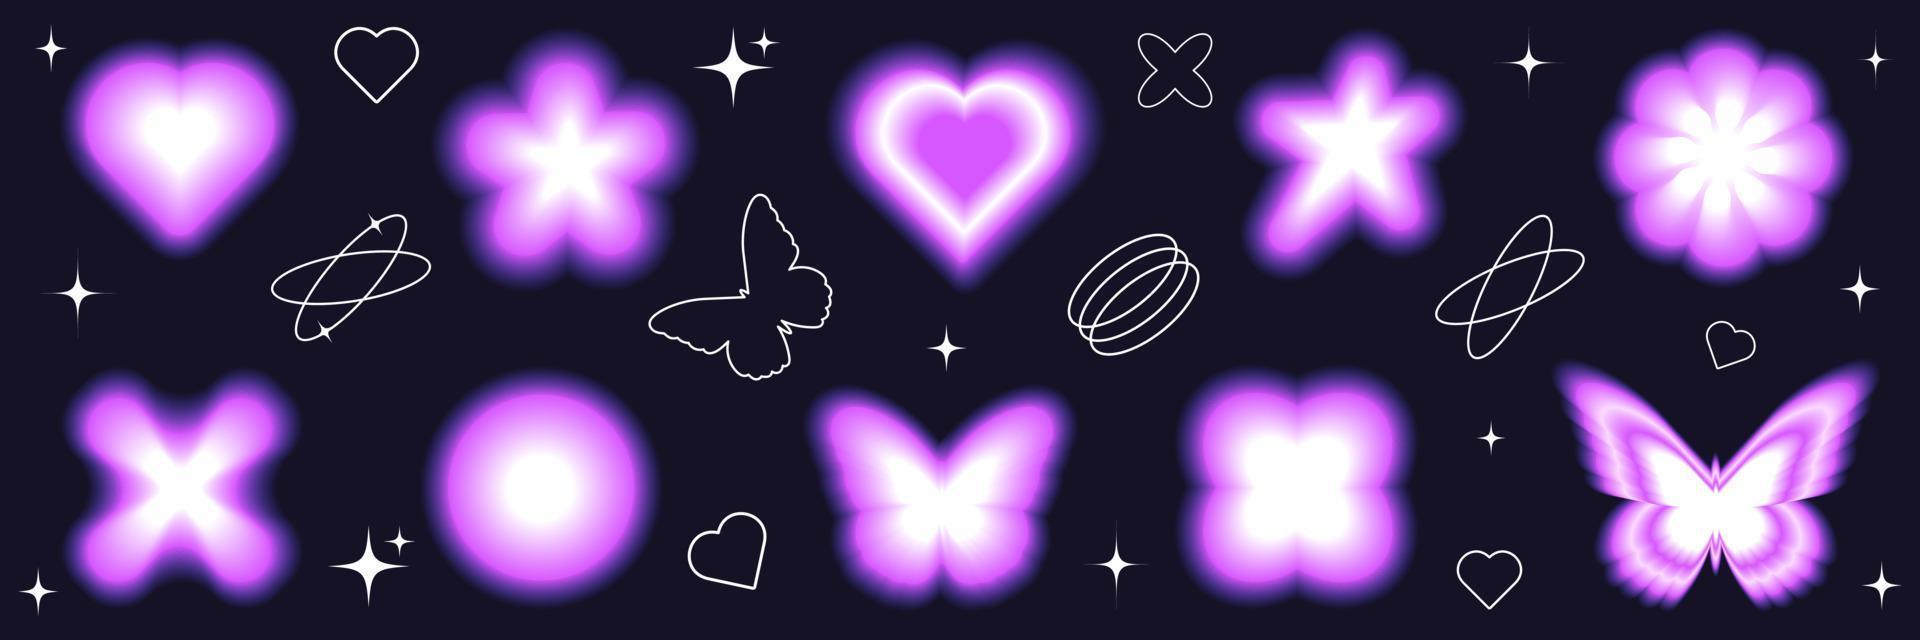 wazig helling y2k sticker set. modern modieus abstract vormen. hart, vlinder, ster, bloem. vector illustratie met gevoel 90s - jaren 2000.